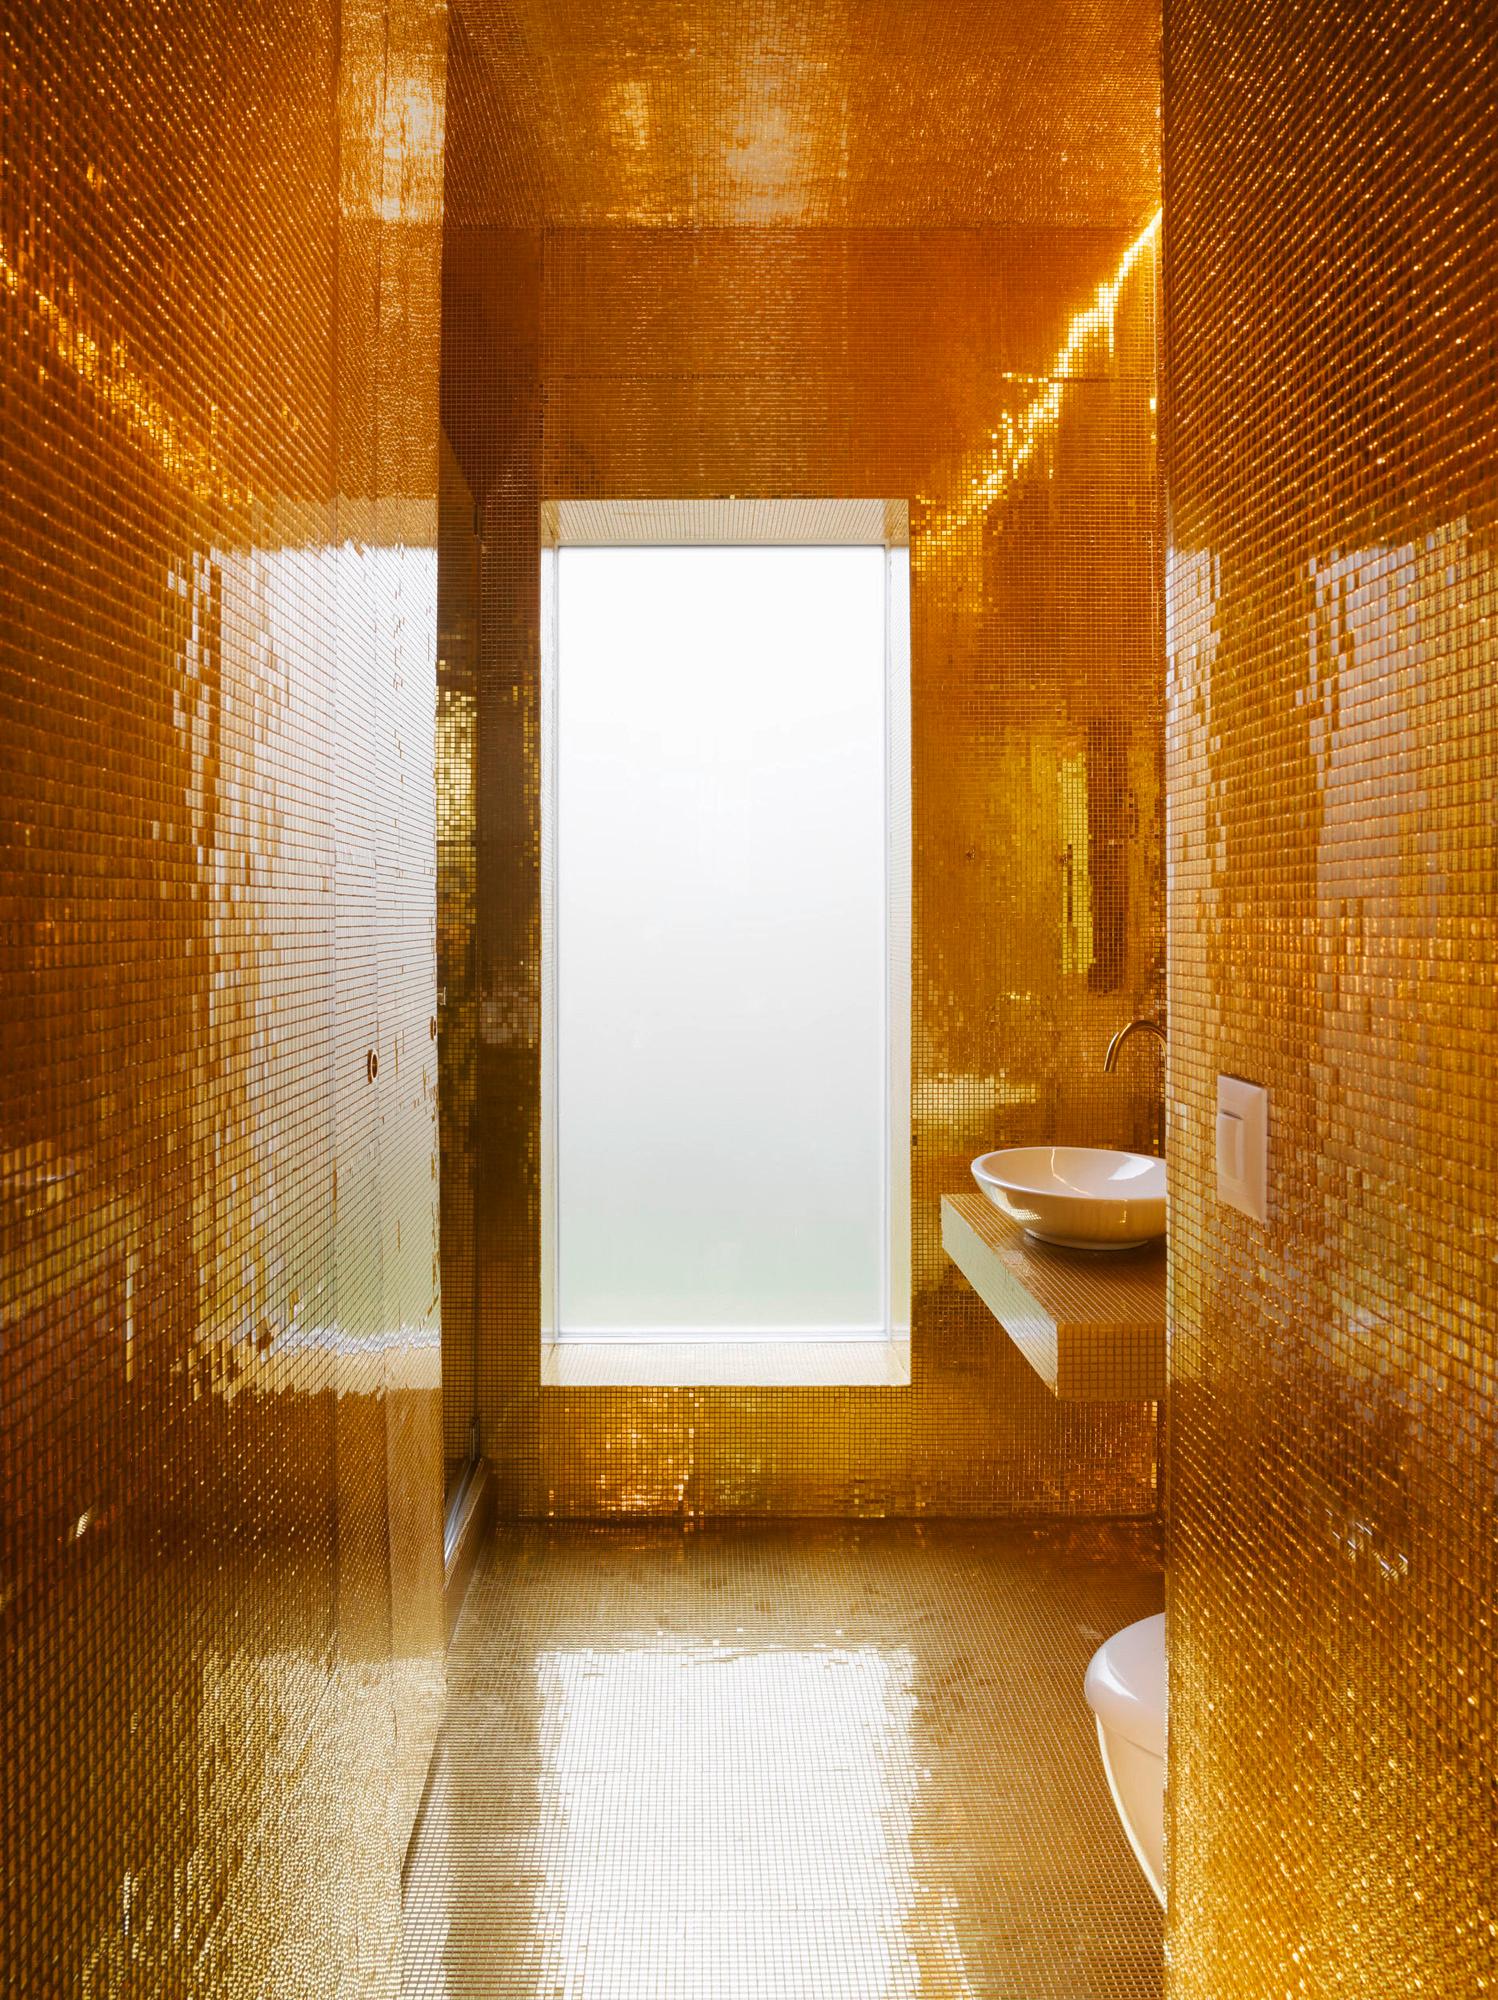 Architektur-Reportage Bern: luxuriöses Bad ausgekleidet mit Goldplättchen